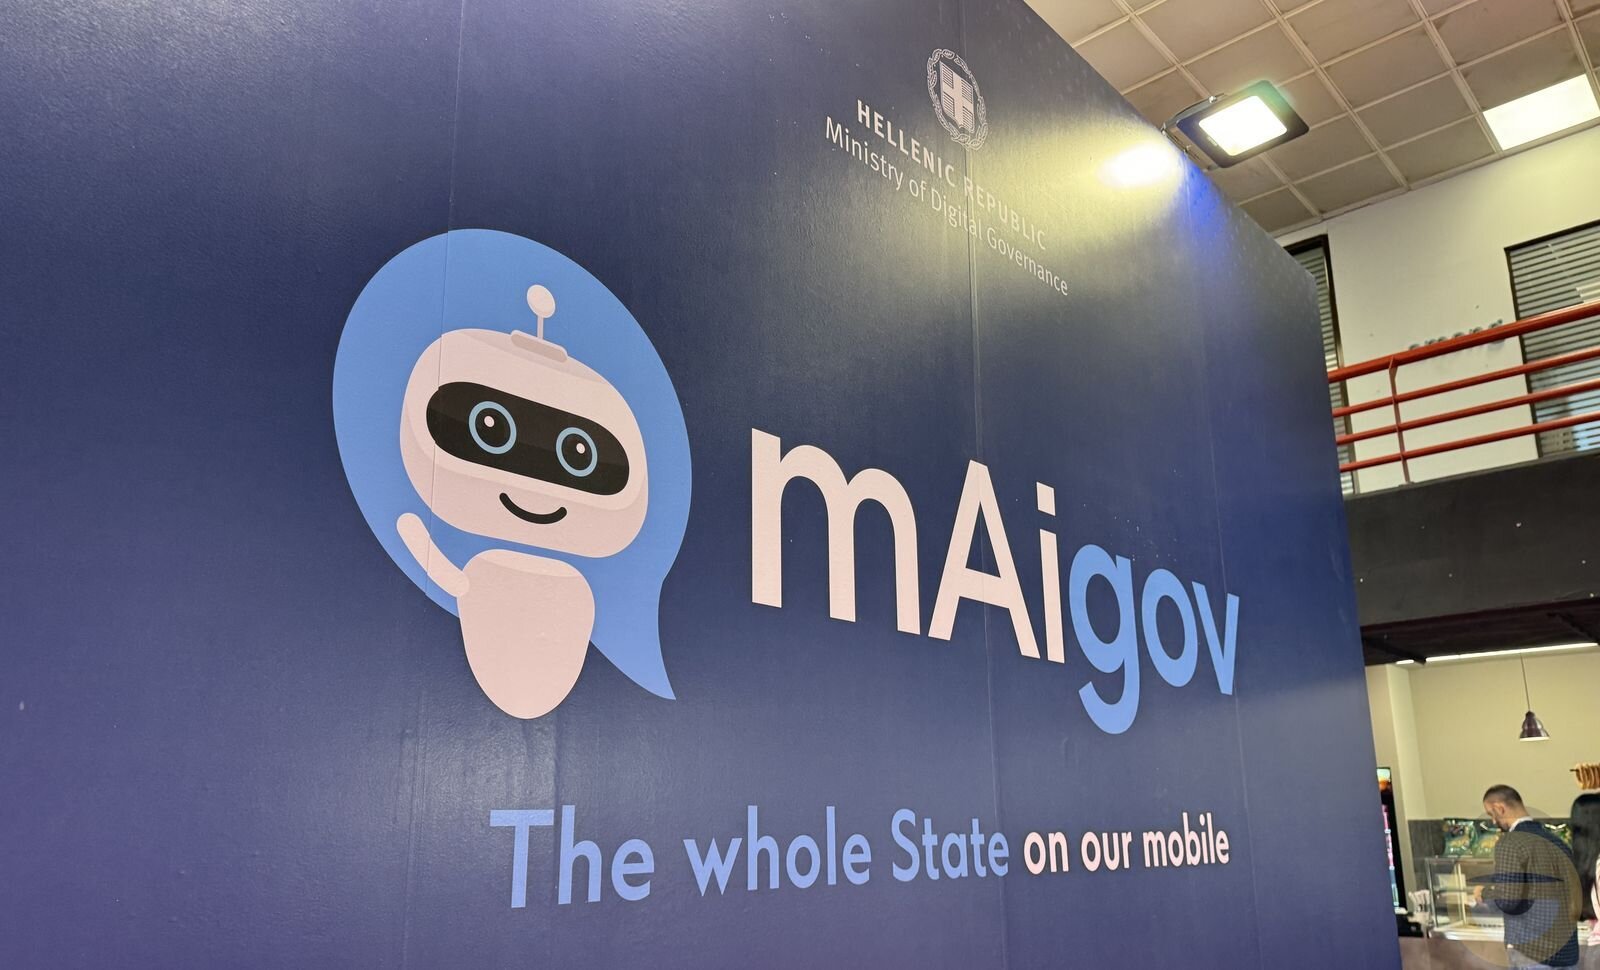 Το mAigov, ο Ψηφιακός Βοηθός του gov.gr, αποκτά δυνατότητα αυτόματης έκδοσης εγγράφων με τη συναίνεση των πολιτών